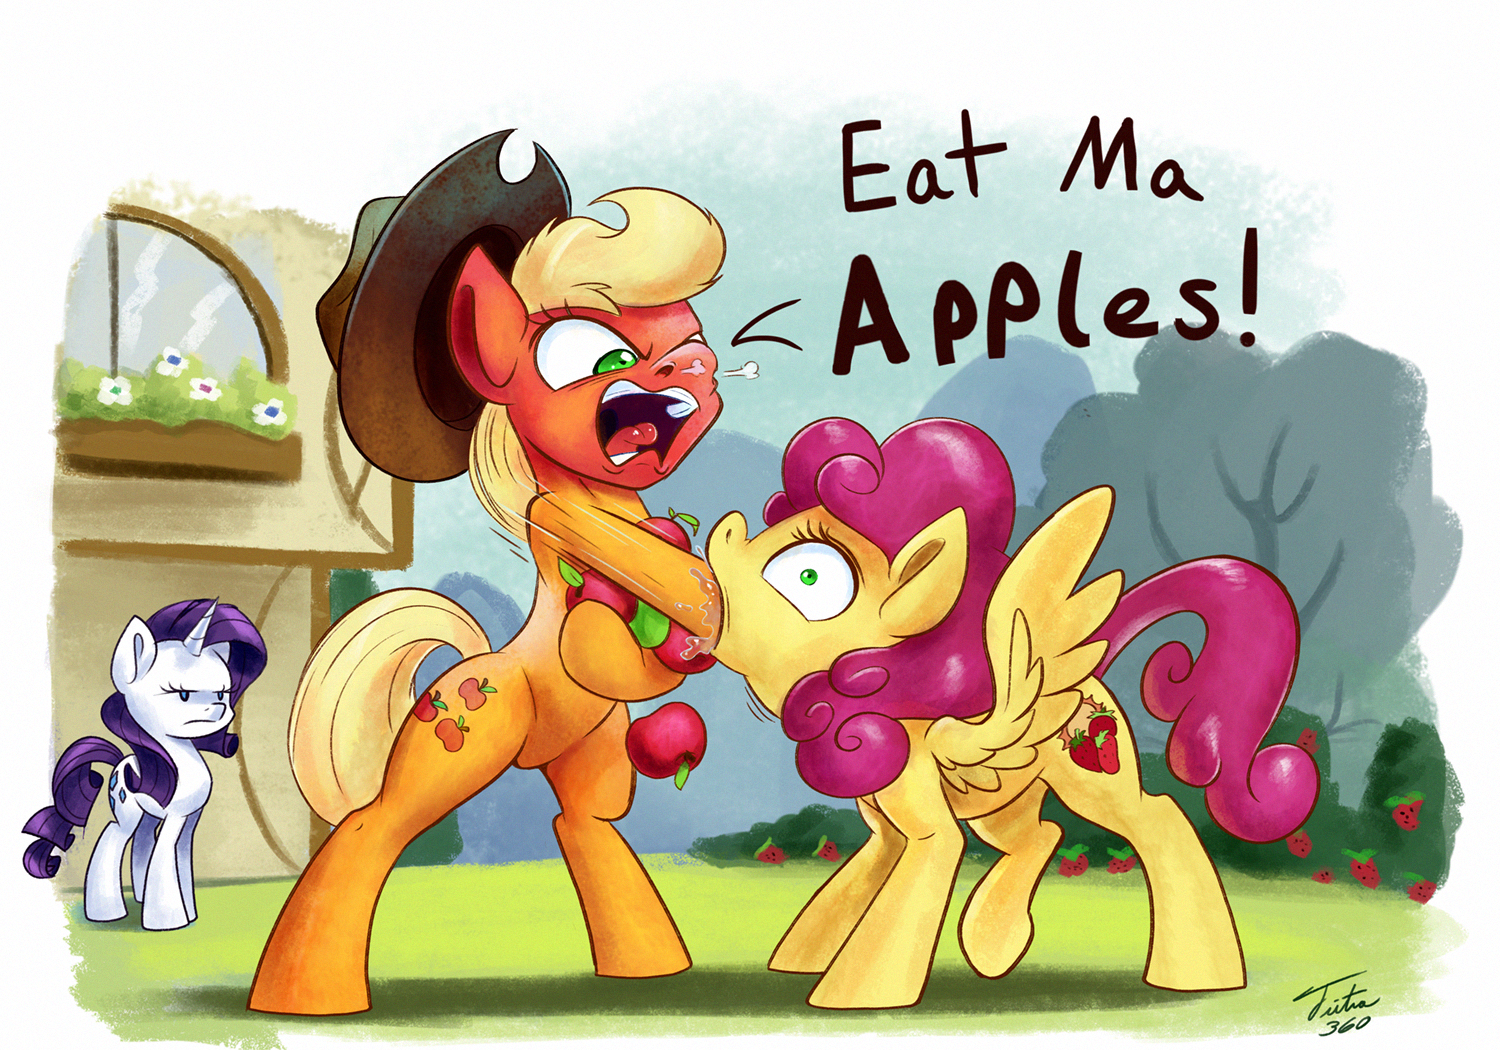 Eat Ma Apples